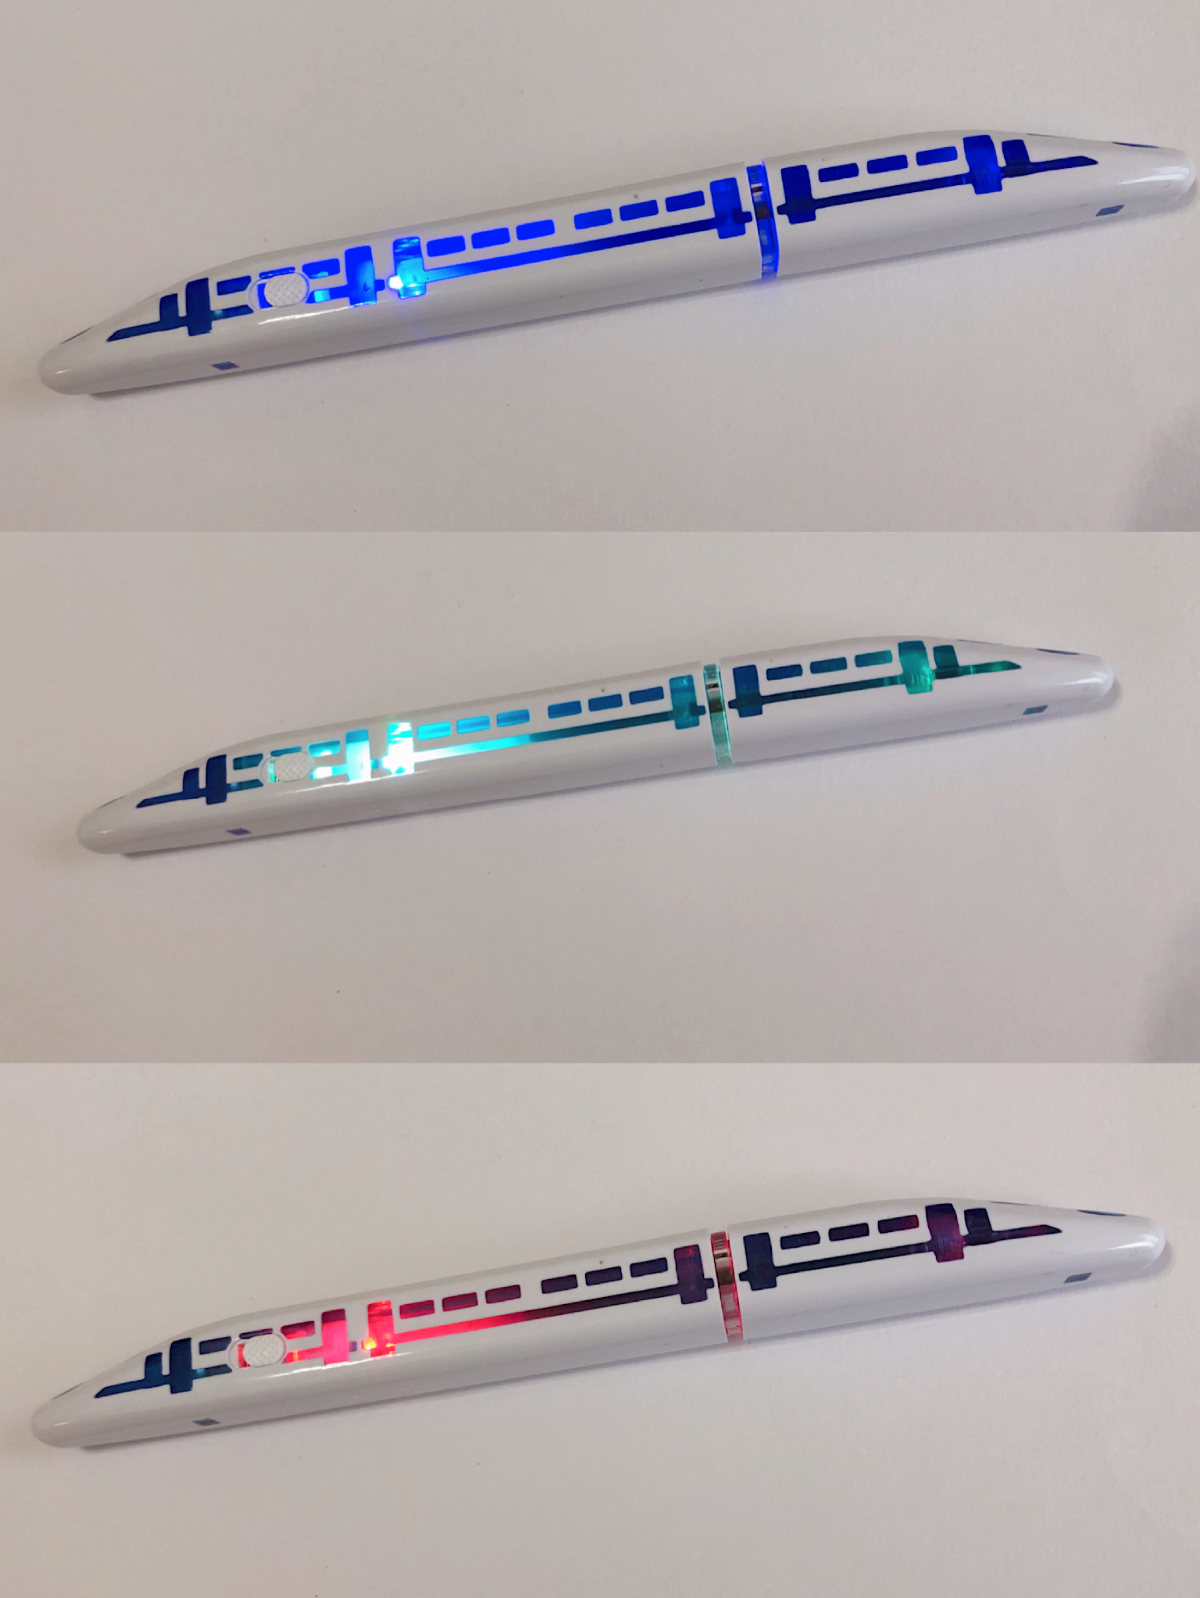 ダイソー Ledライト内蔵で光る新幹線型のボールペンを発見 こう見えてじつは書き心地も良い